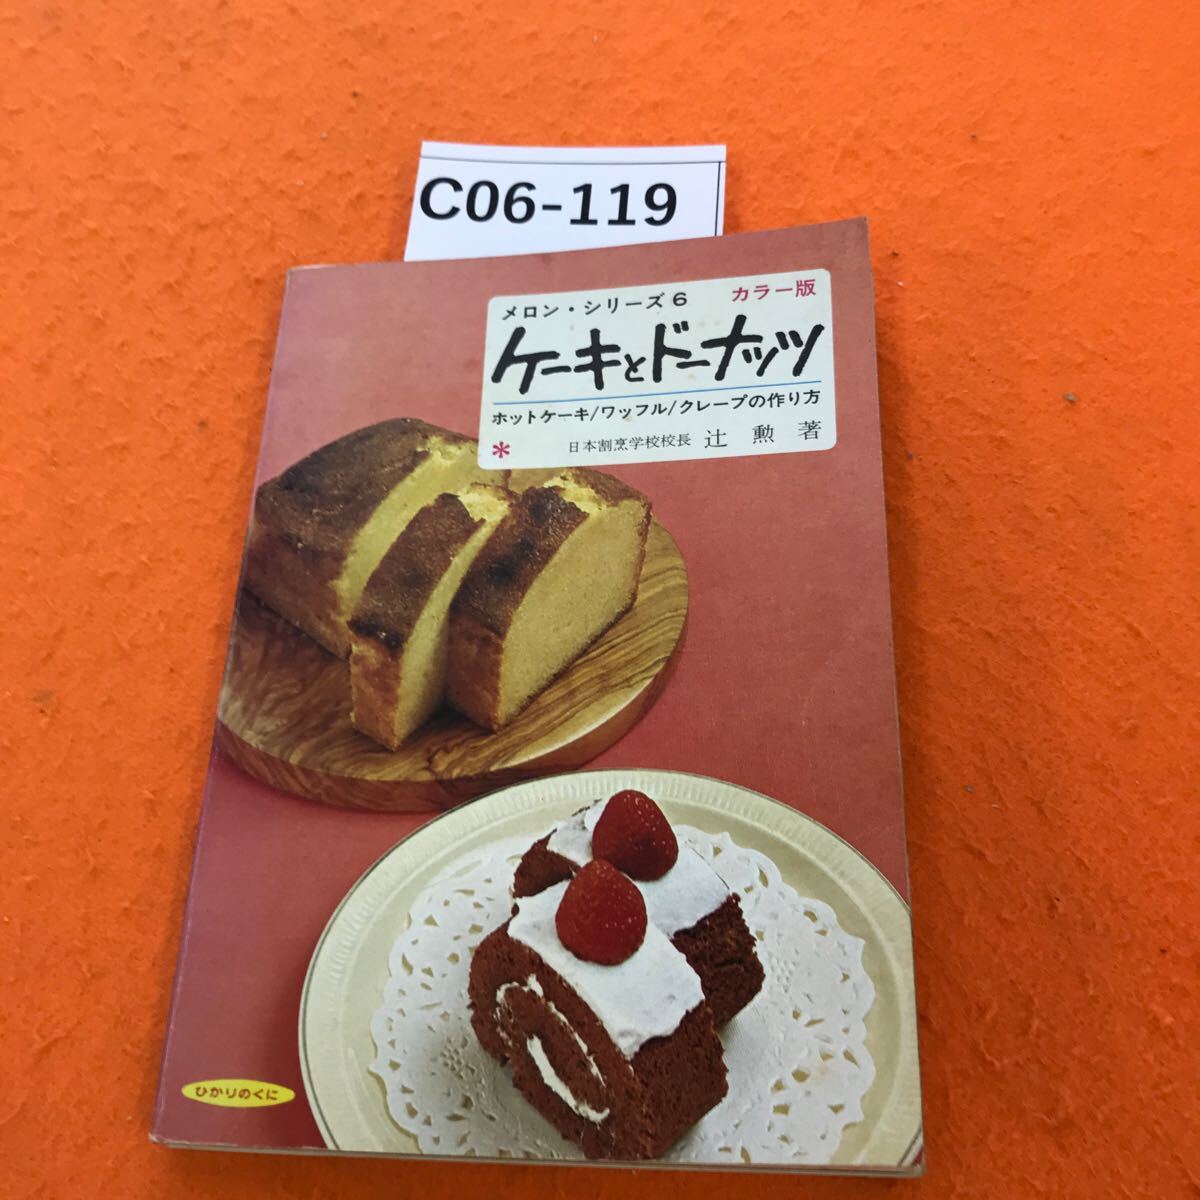 C06-119 メロンシリーズ 6 ケーキとドーナッツ_画像1